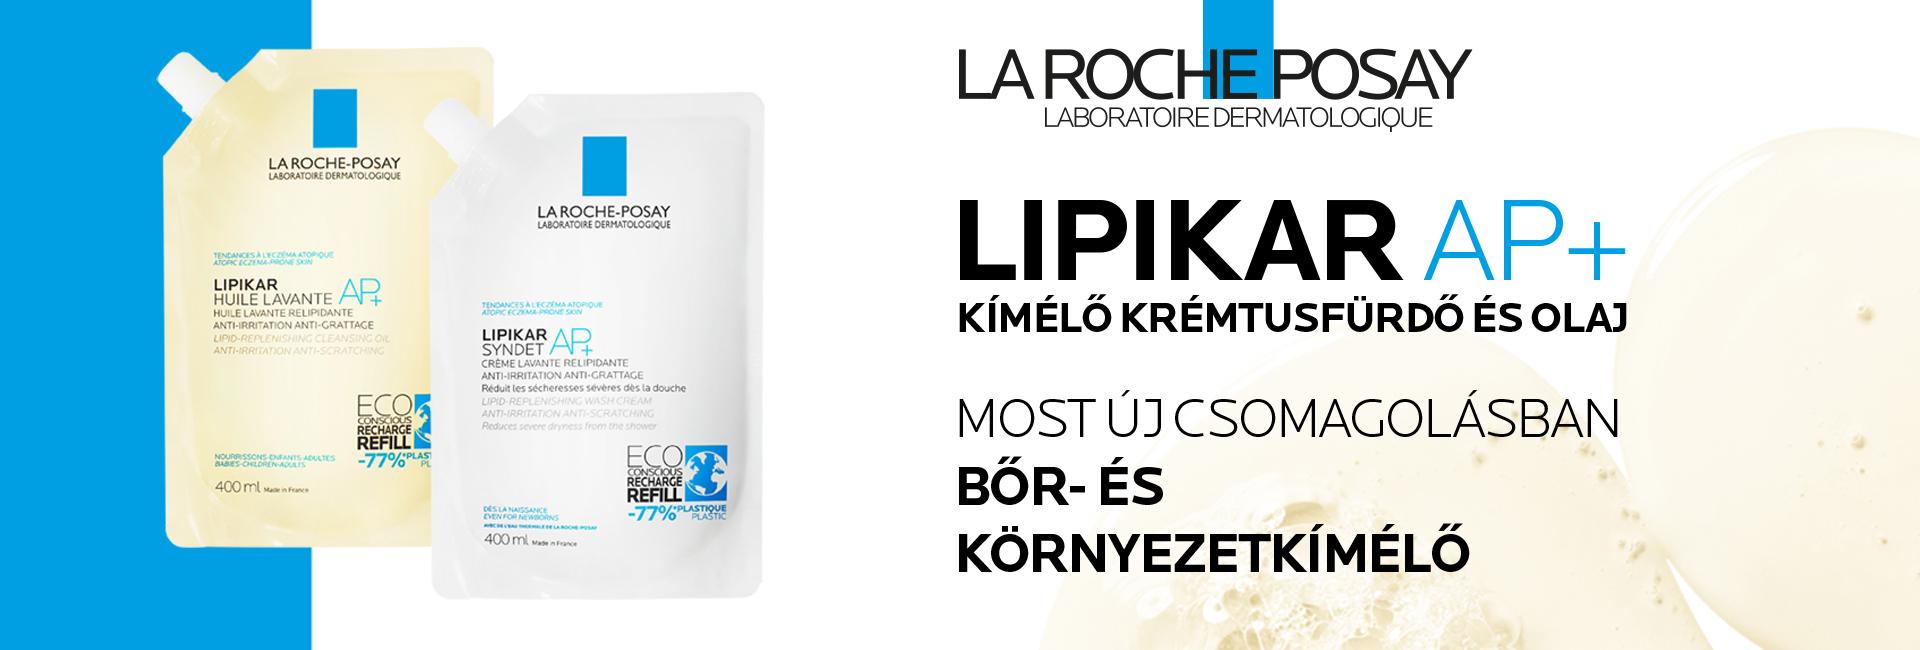 La Roche-Posay Lipikar AP+ Syndet krémtusfürdő és olaj most új csomagolásban bőr- és környezetkímélő!